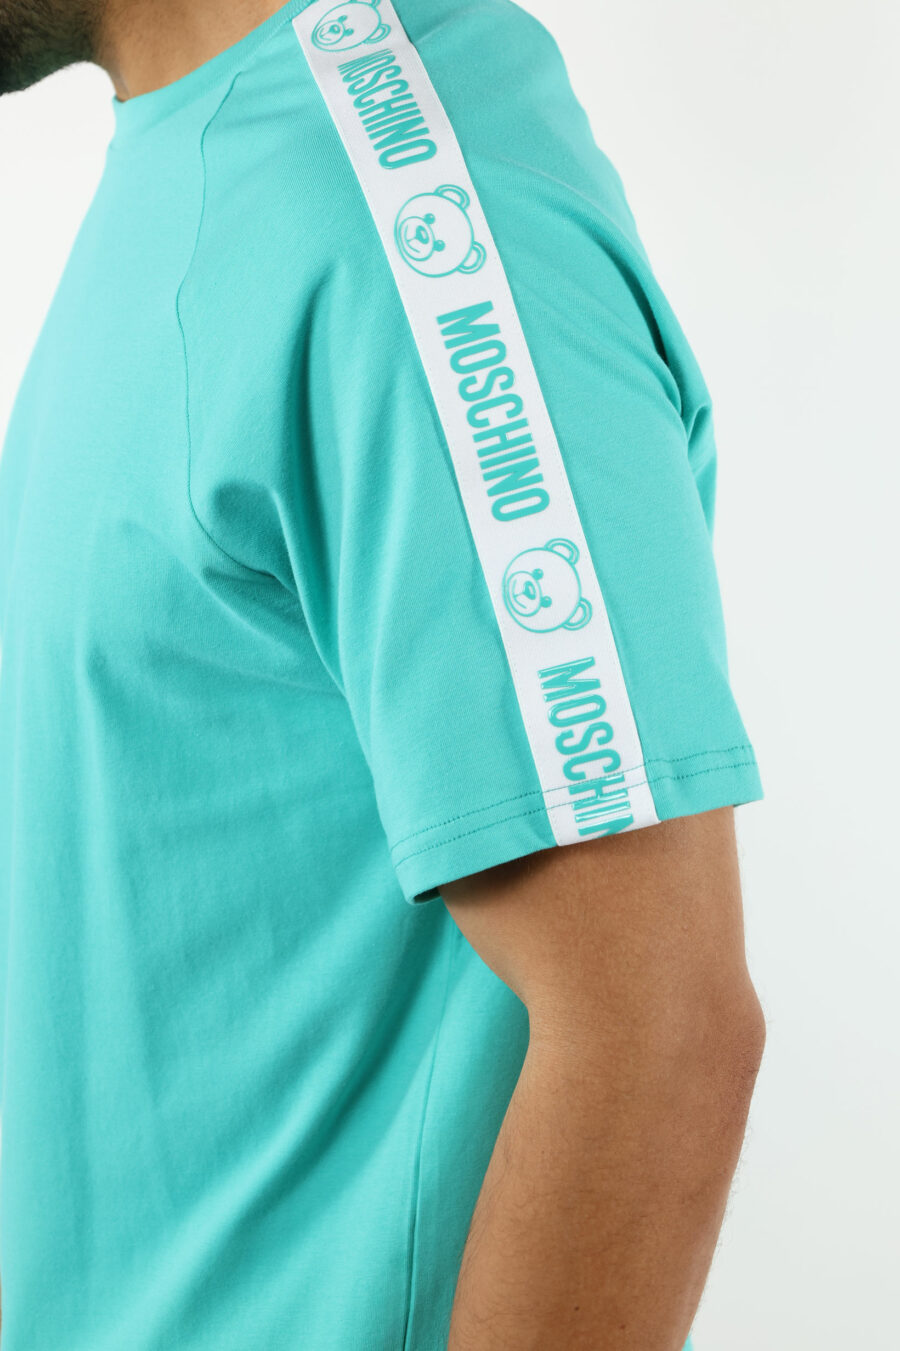 T-shirt azul água-marinha com o logótipo do urso "underbear" na faixa do ombro - 111007